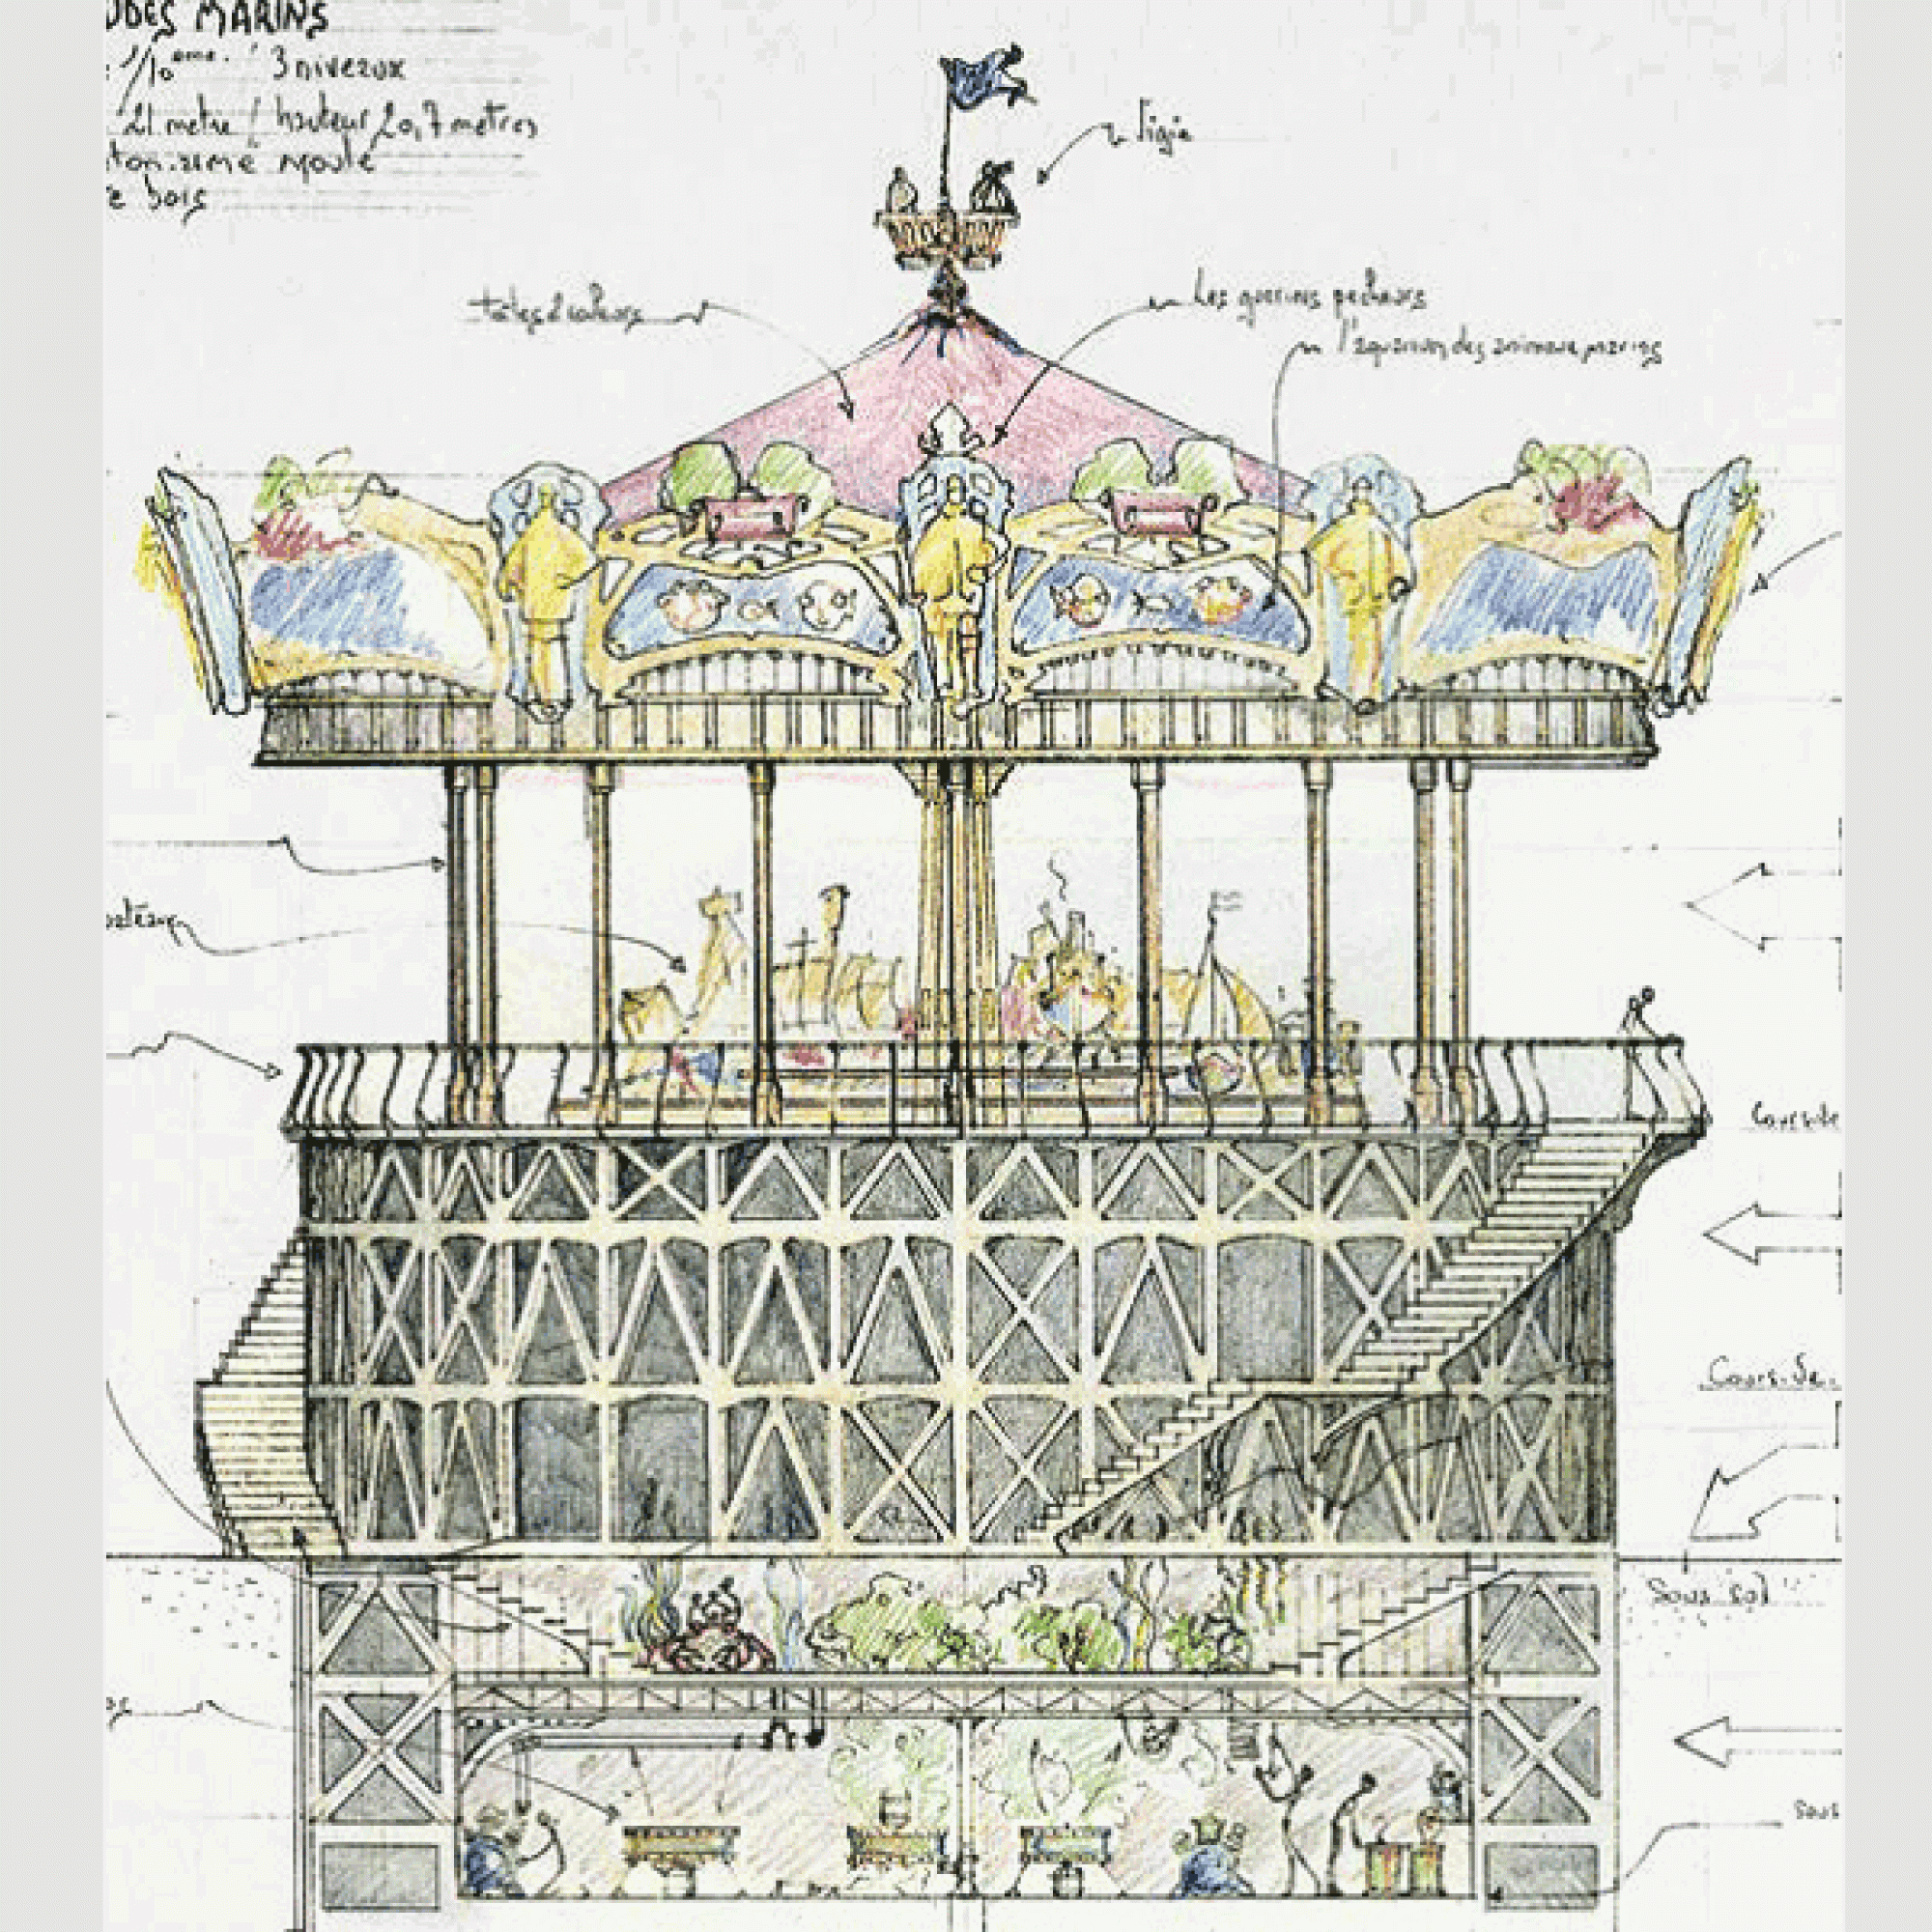 Ein Entwurf des Karussells von François Delarozière. (Bild: © François Delarozière)